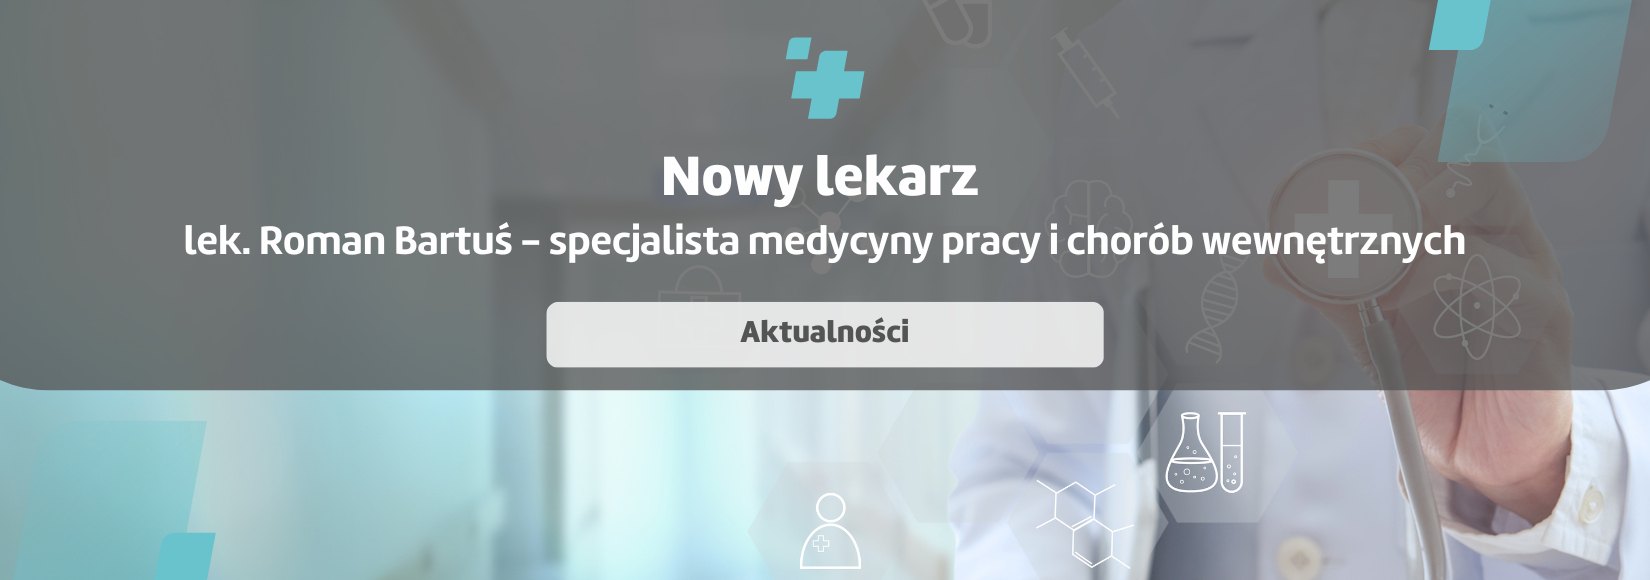 Nowy lekarz w Poradni Medycyny Pracy w Tarnowie